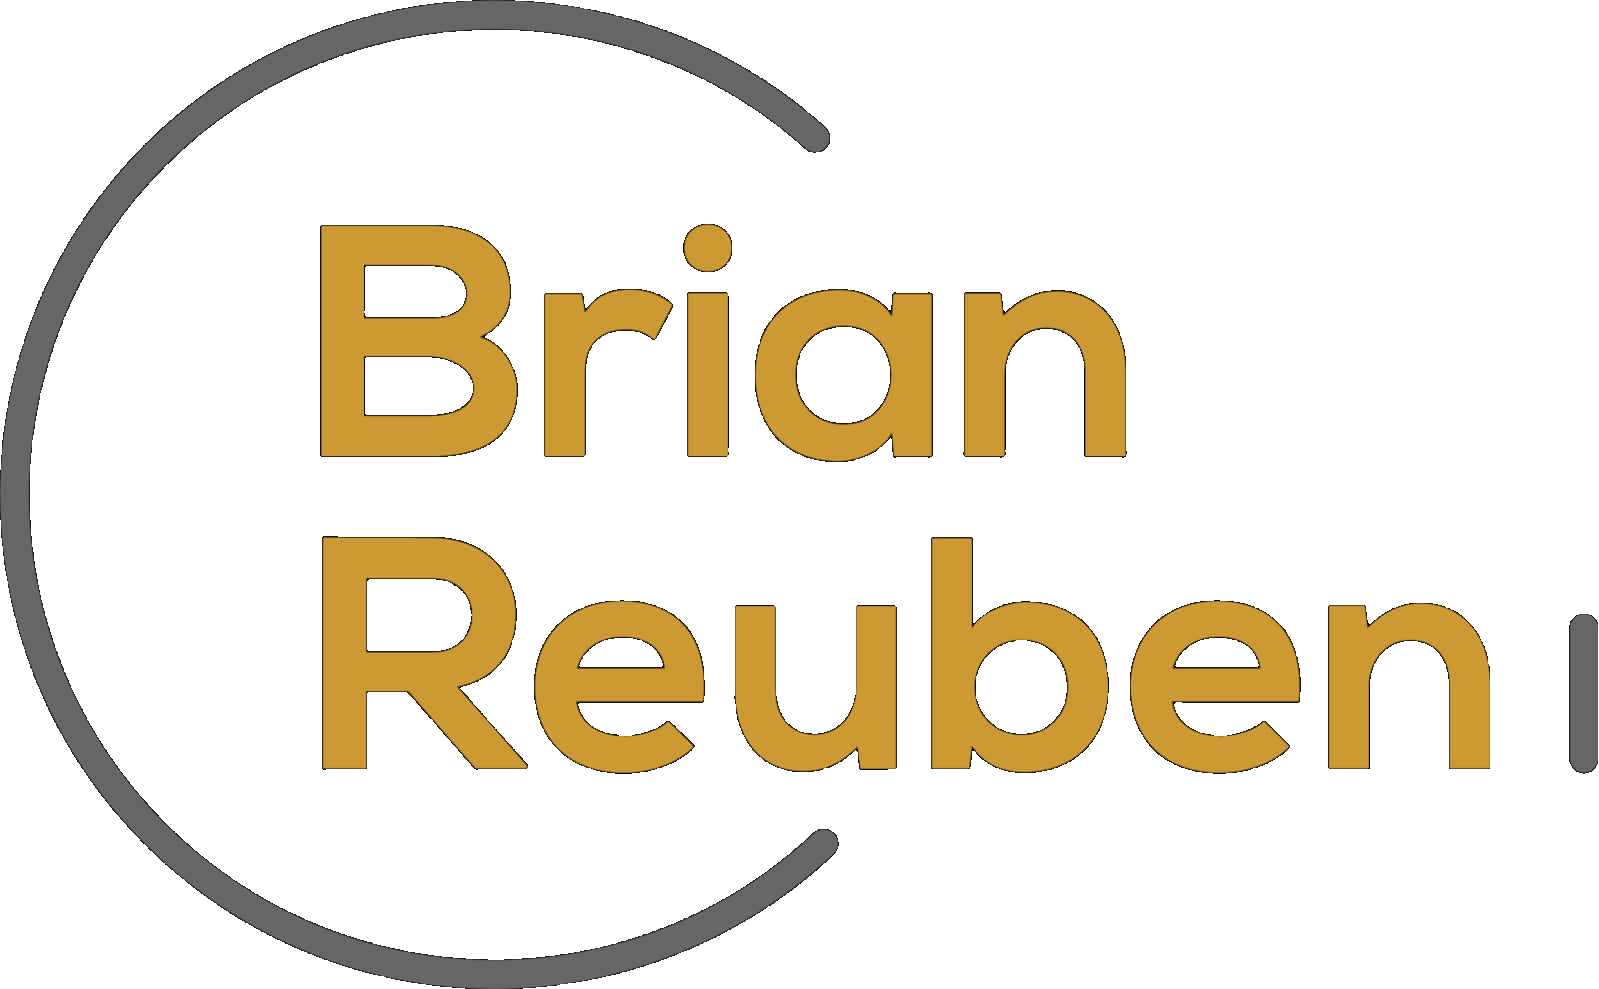 Brian Reuben